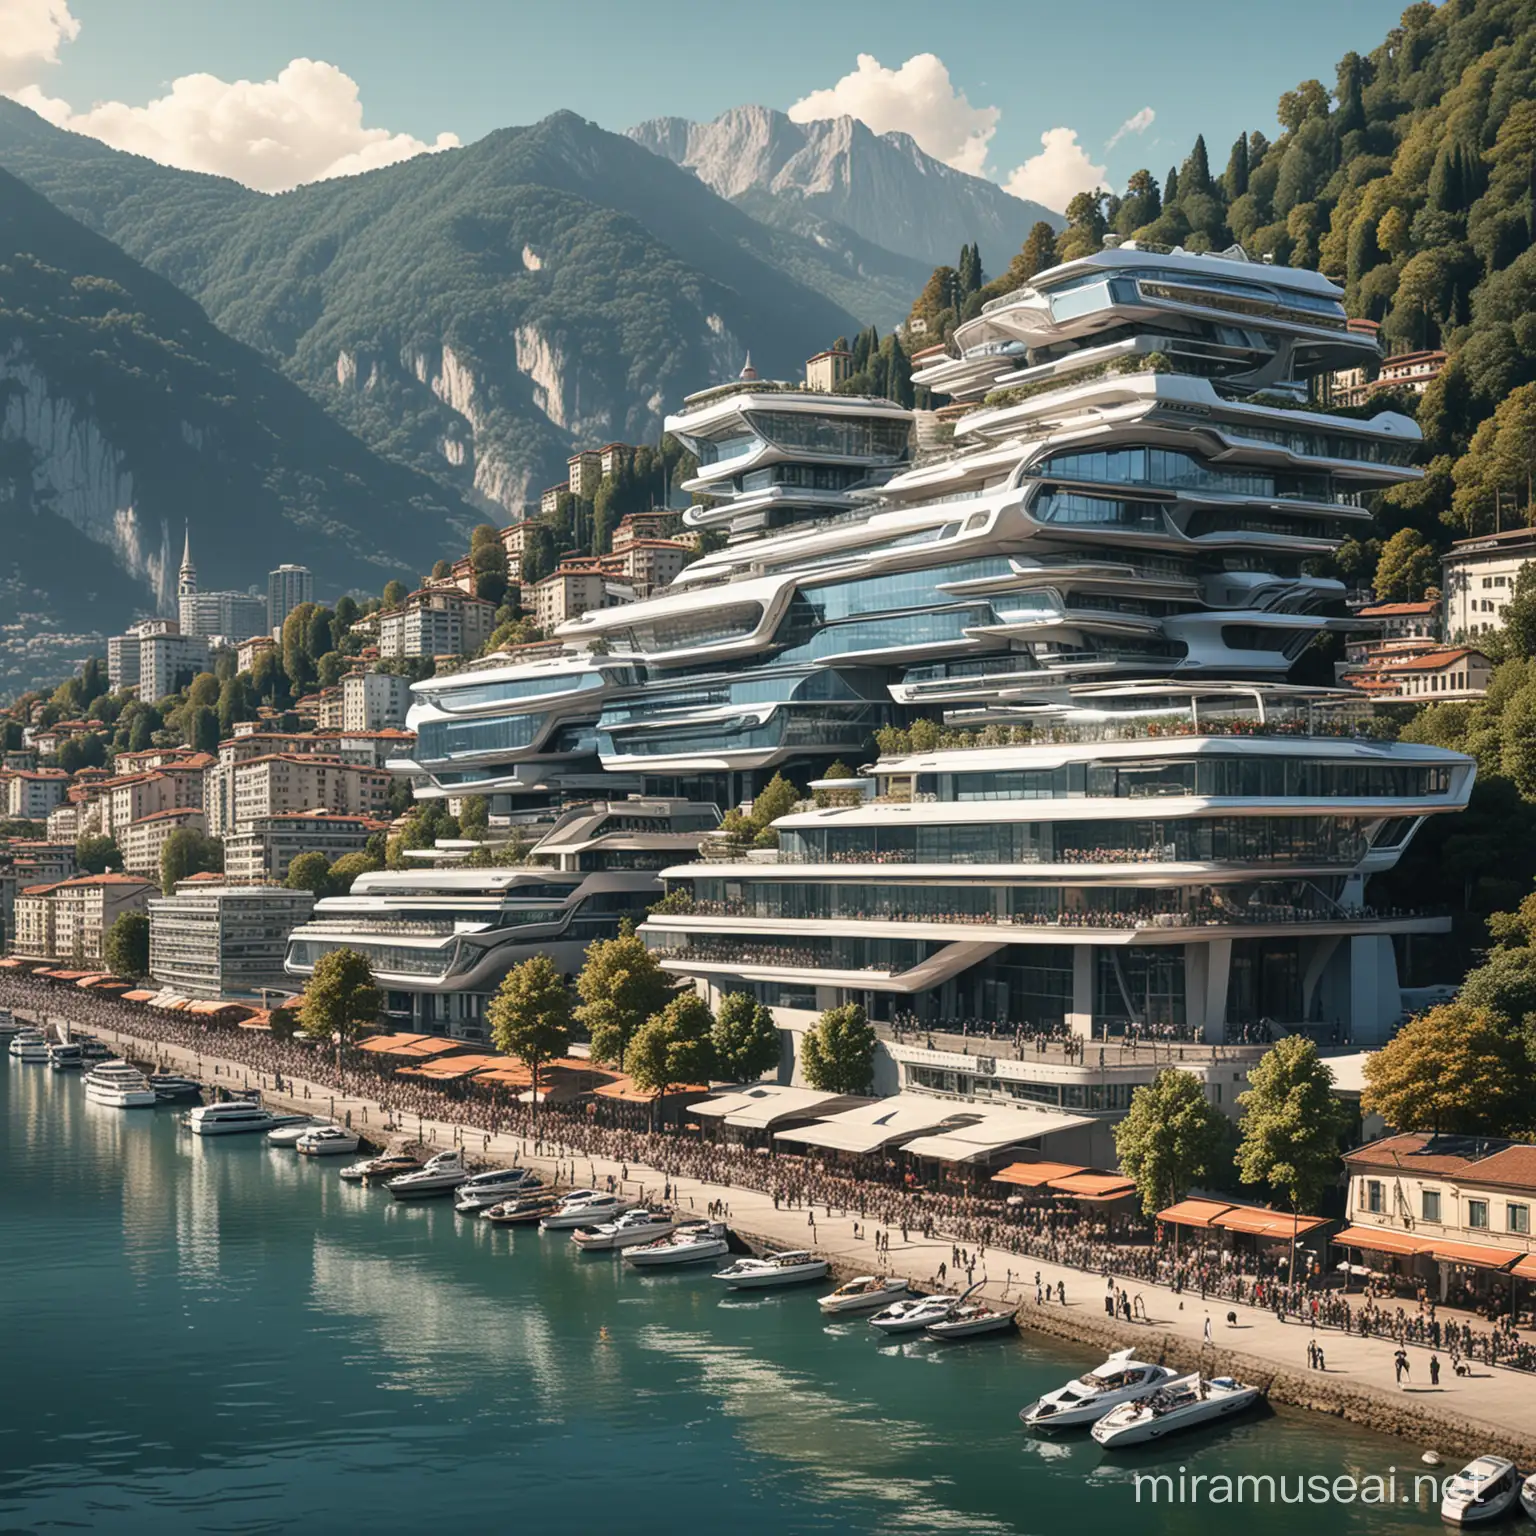 Disegnami Lugano futuristica, anno 2124 con palazzi hi-tech e sci-fi